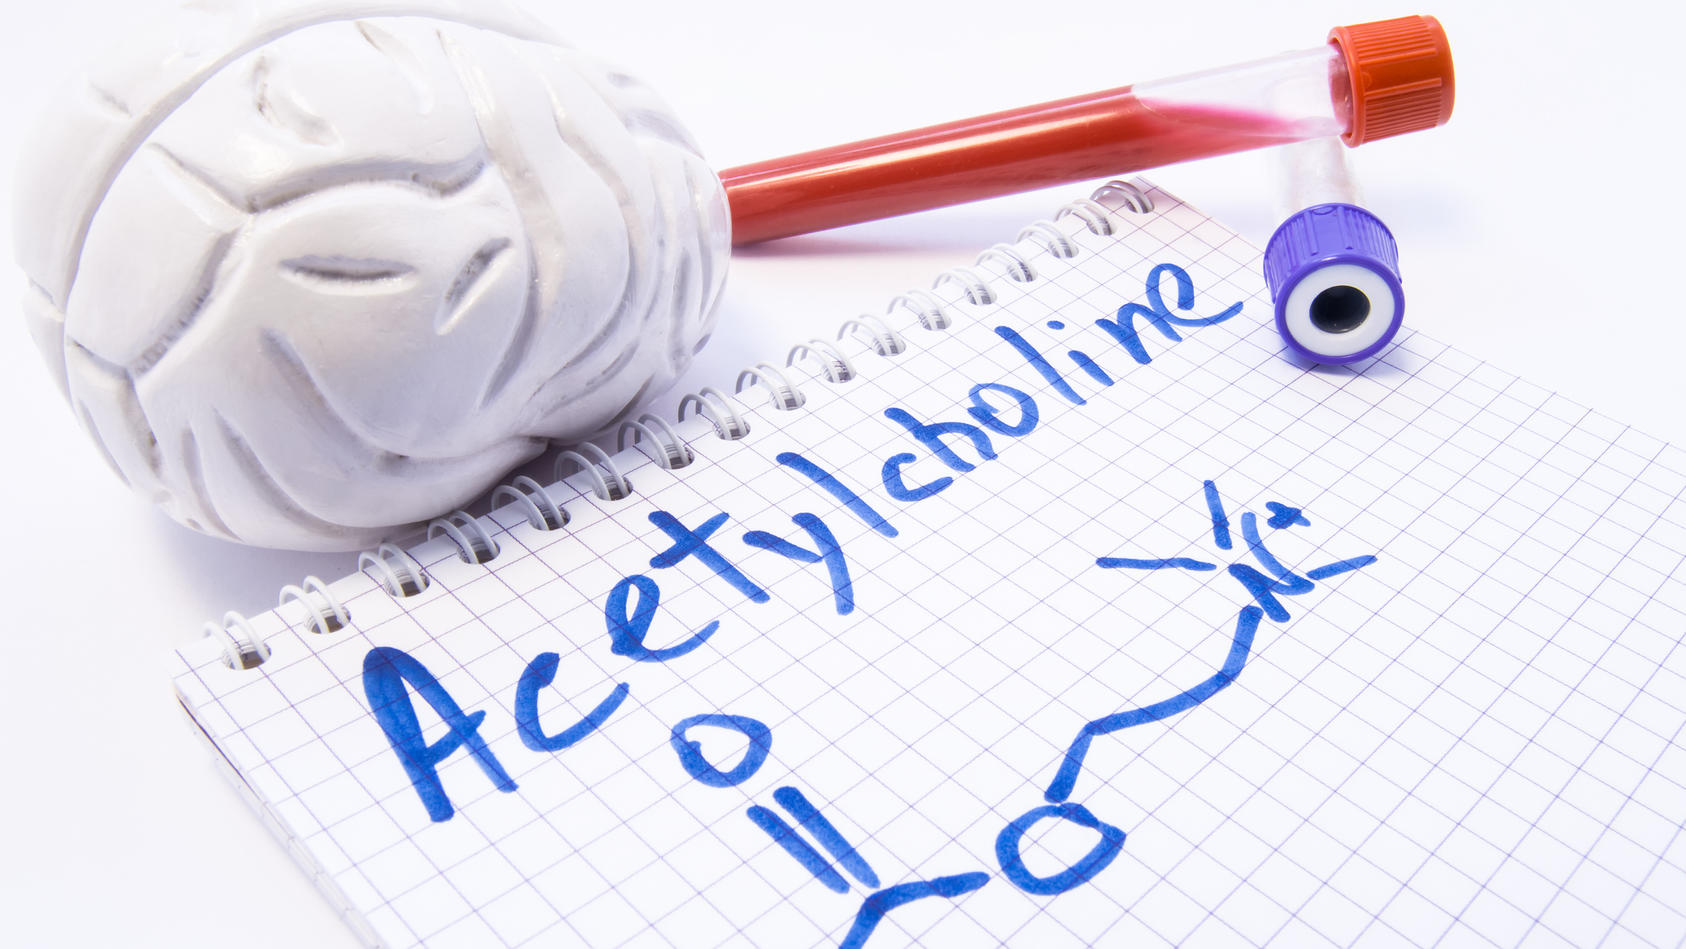 Gesundheitslexikon: Acetylcholin (ACh) ist einer der wichtigsten Neurotransmitter in vielen Organismen, so auch im Menschen.